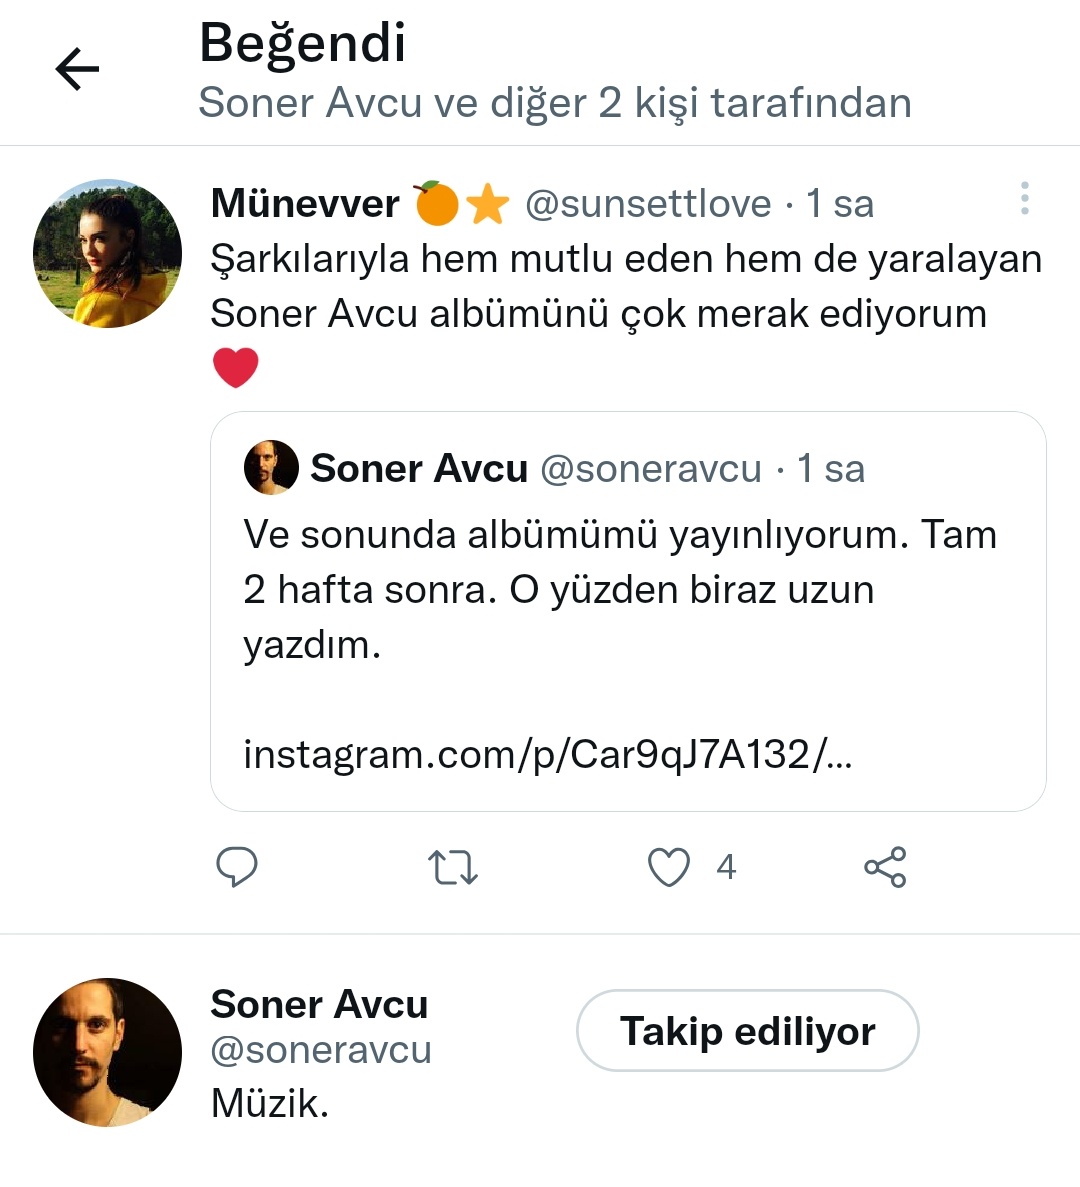 Soner Avcu benim de tweetimi beğenmiş teşekkür ederim @soneravcu